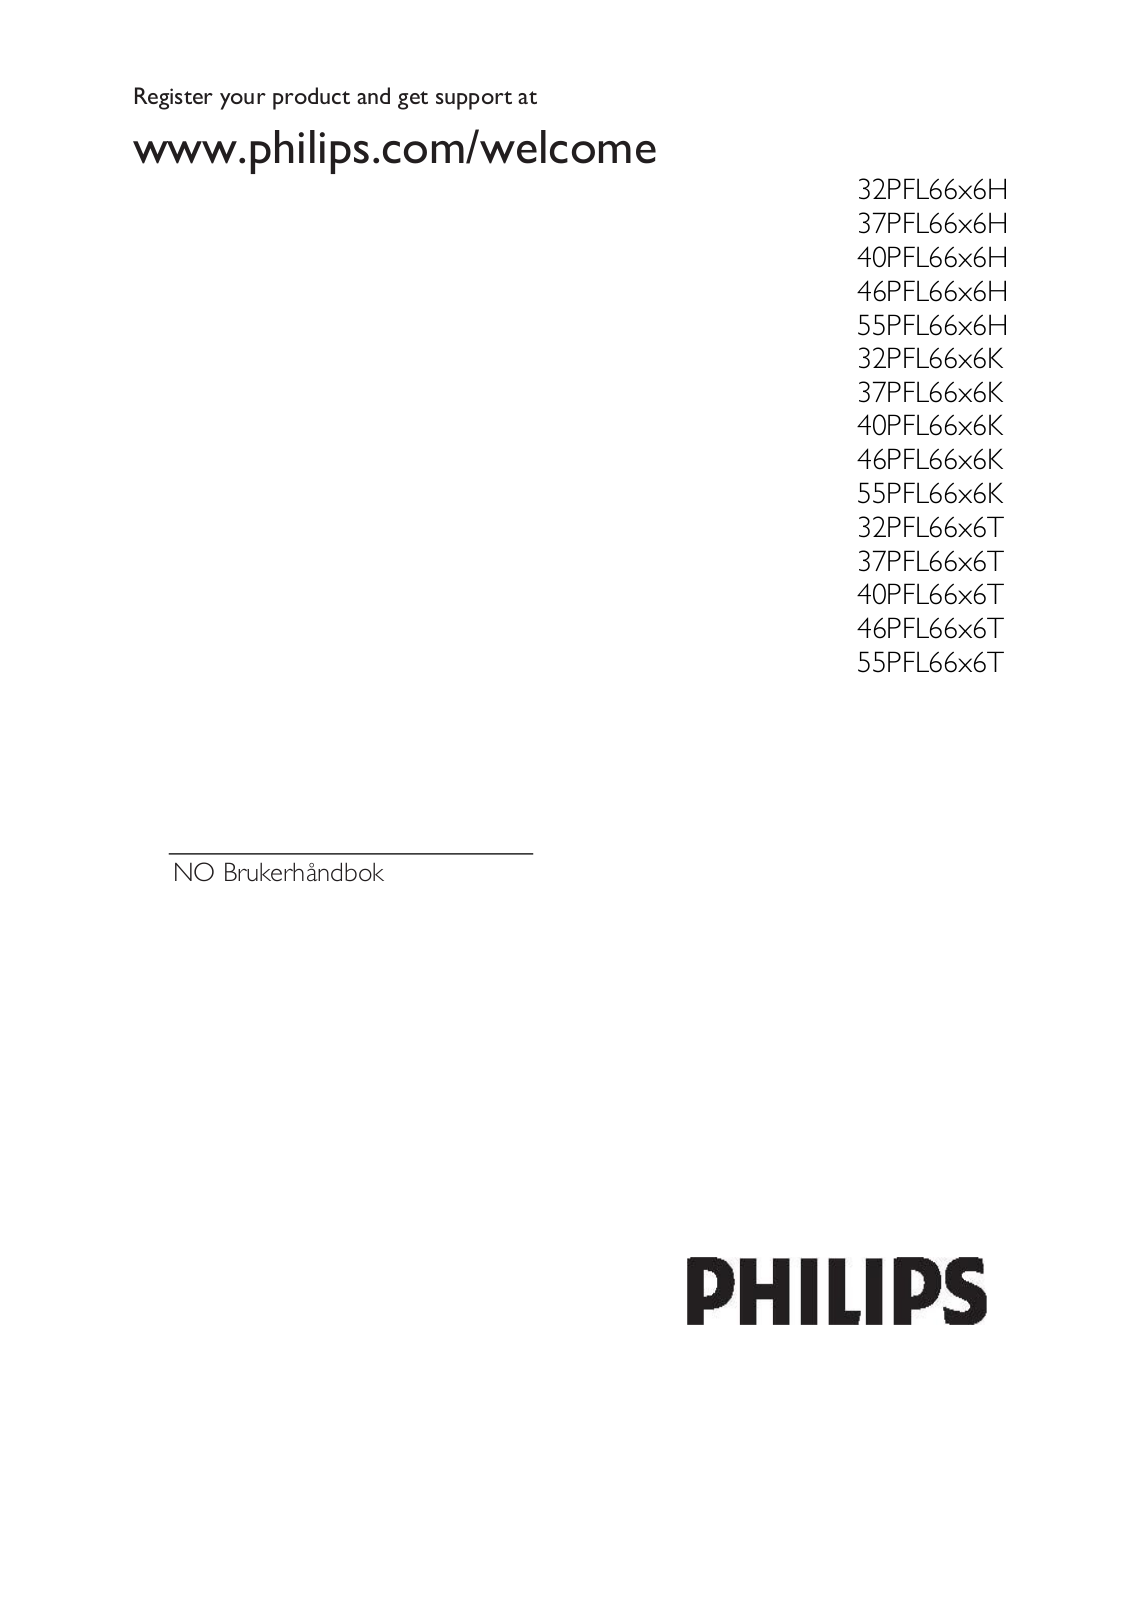 Philips 32PFL66x6H, 37PFL66x6H, 40PFL66x6H, 46PFL66x6H, 55PFL66x6H User Manual